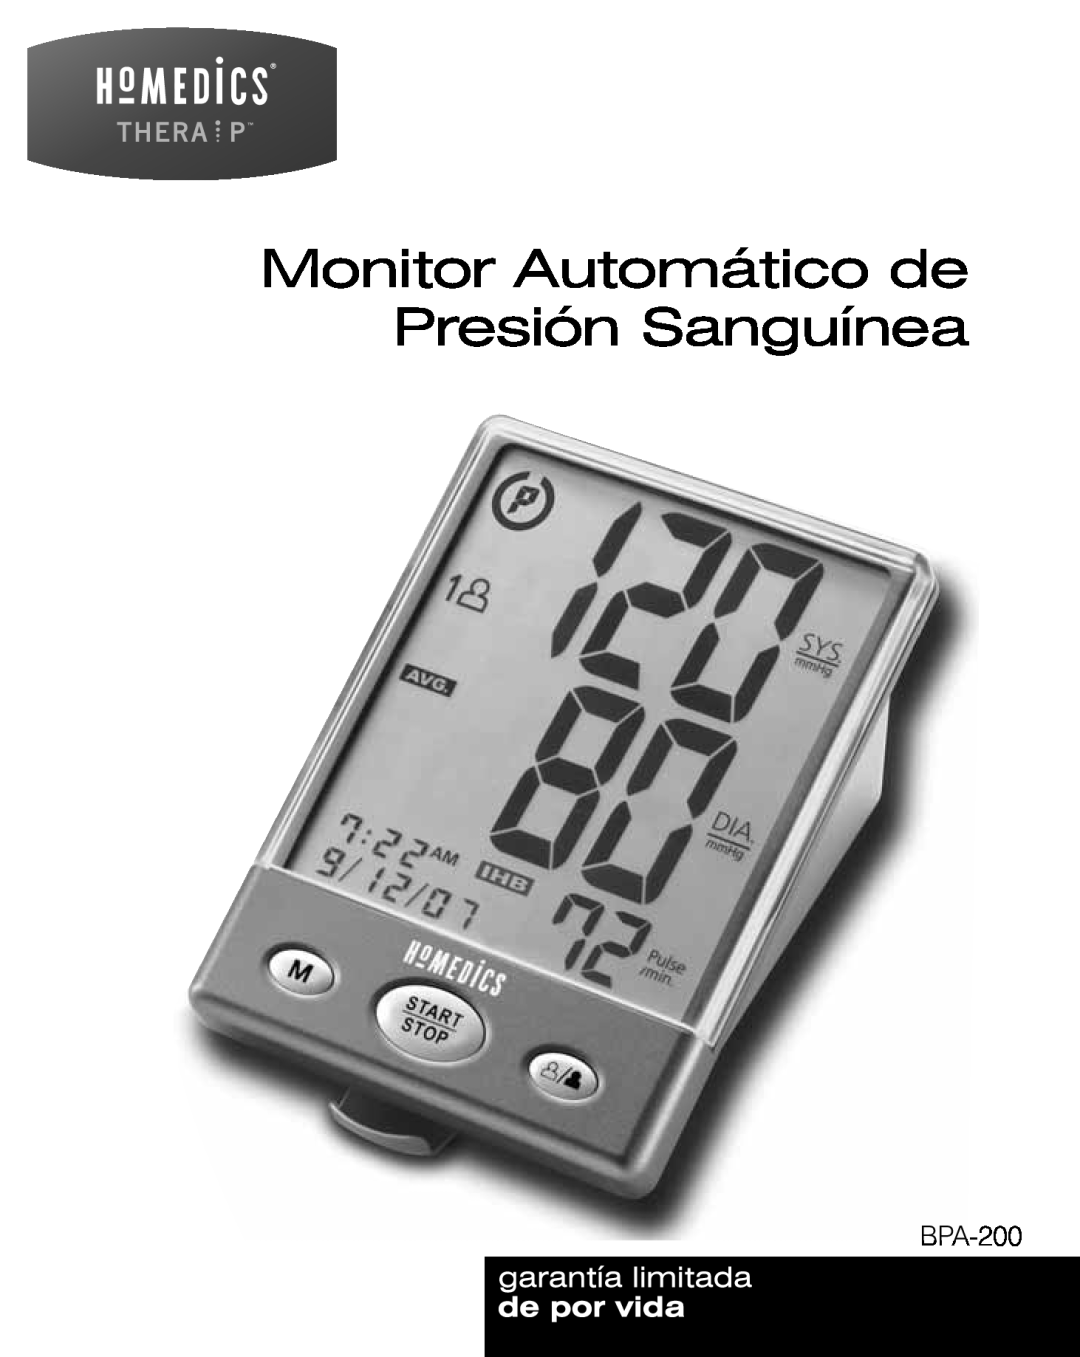 HoMedics BPA-200 manual Monitor Automático de Presión Sanguínea 